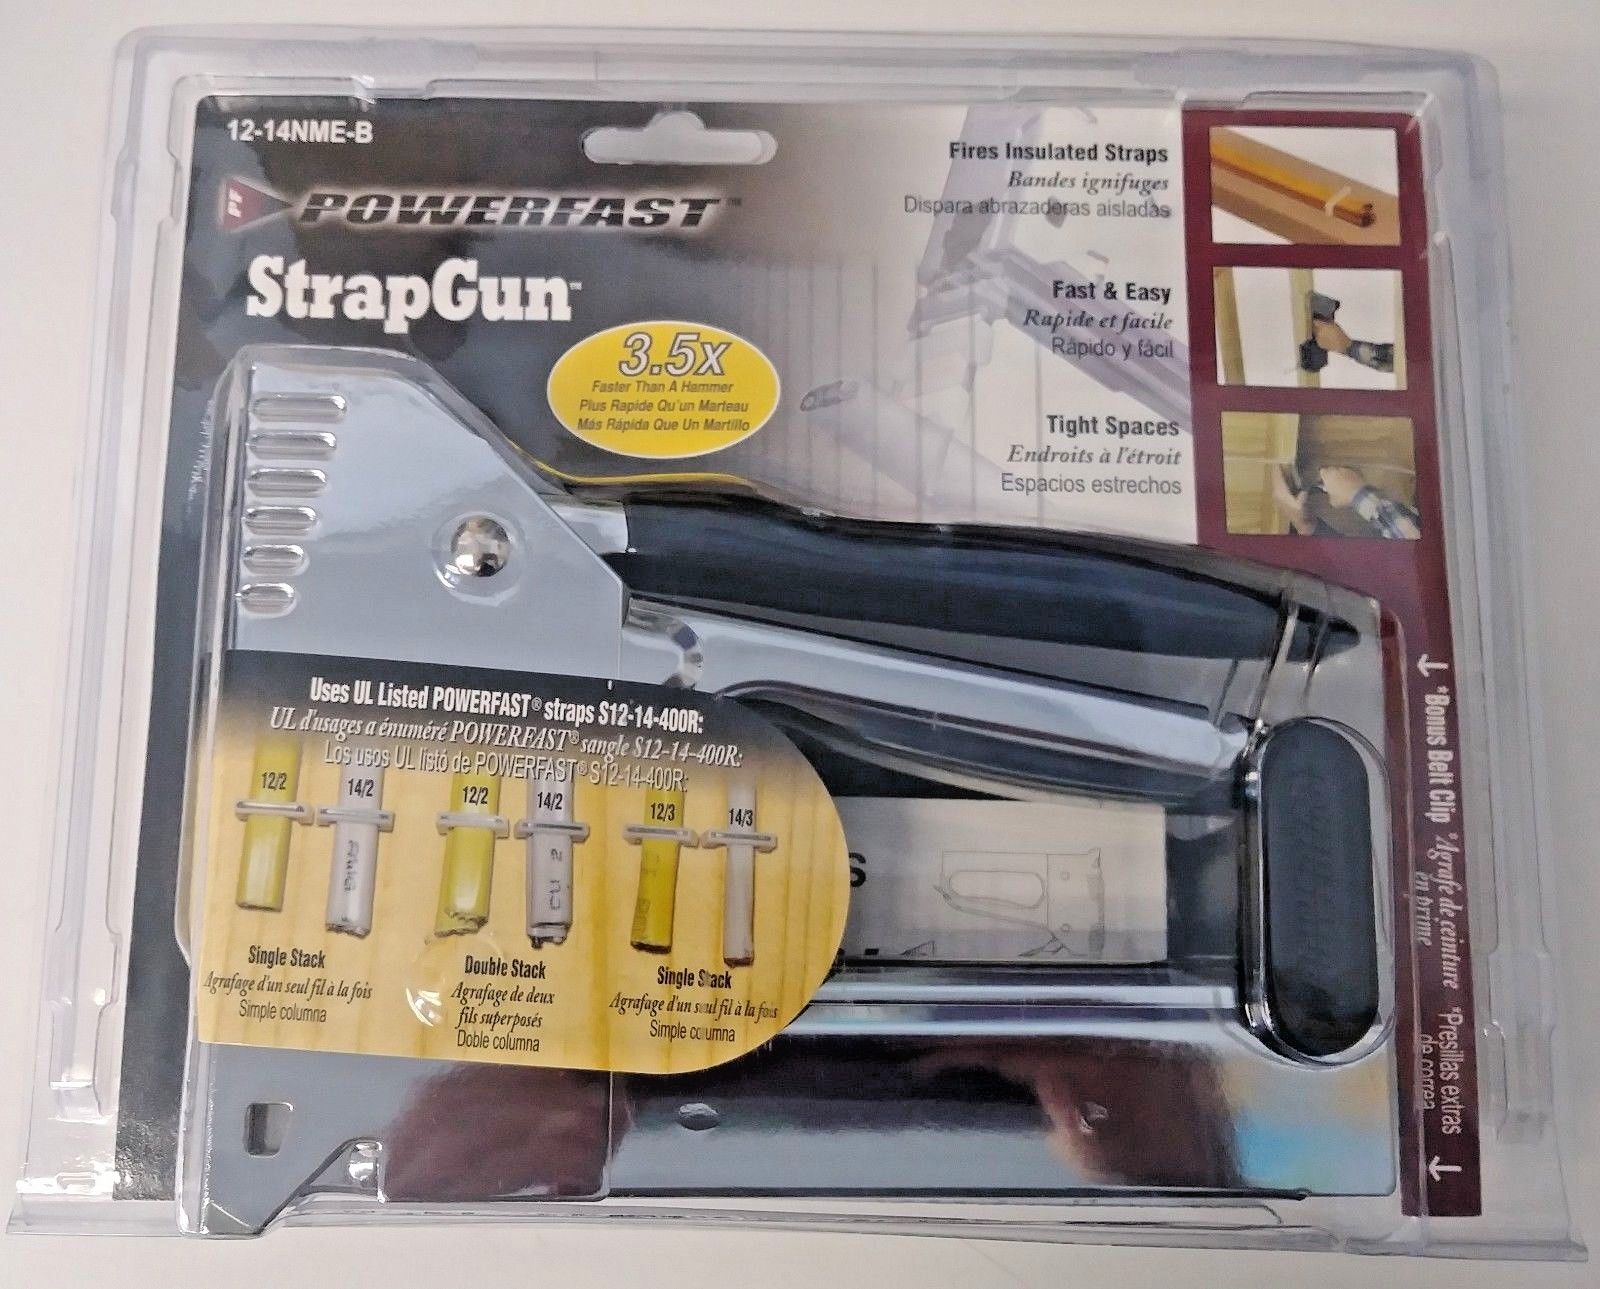 Powerfast 12-14NME-B Strap Gun / Staple Gun